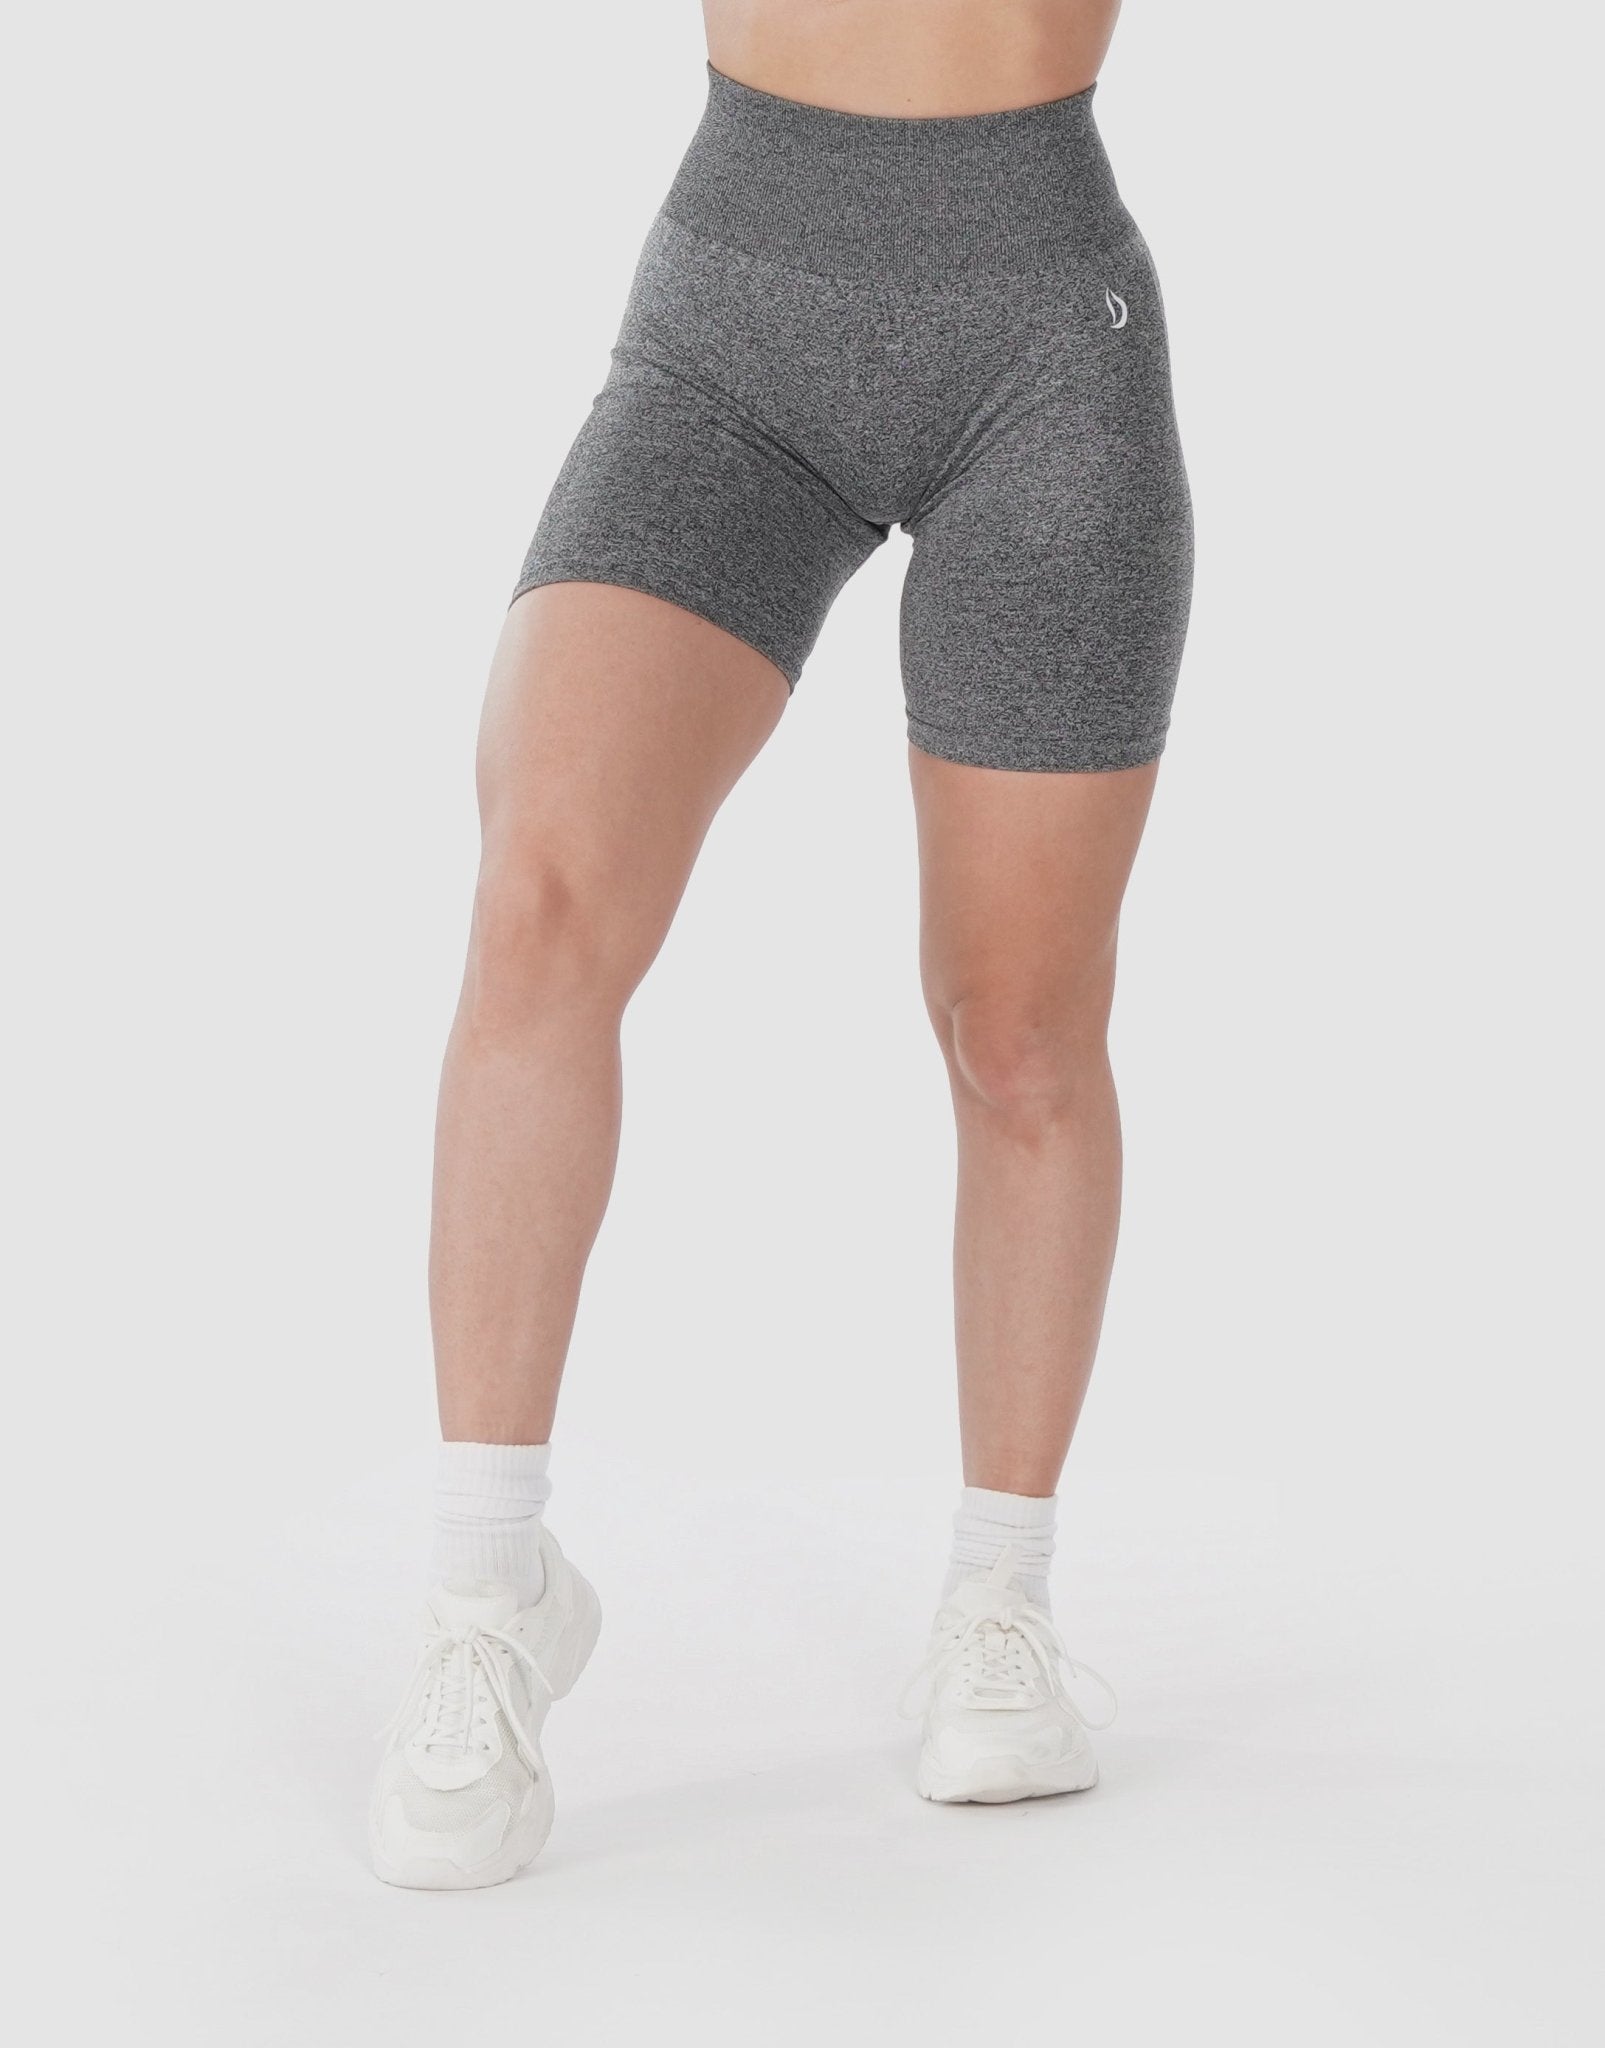 Deyeek Tear Away Shorts for Women Side Snap Velcro Shorts